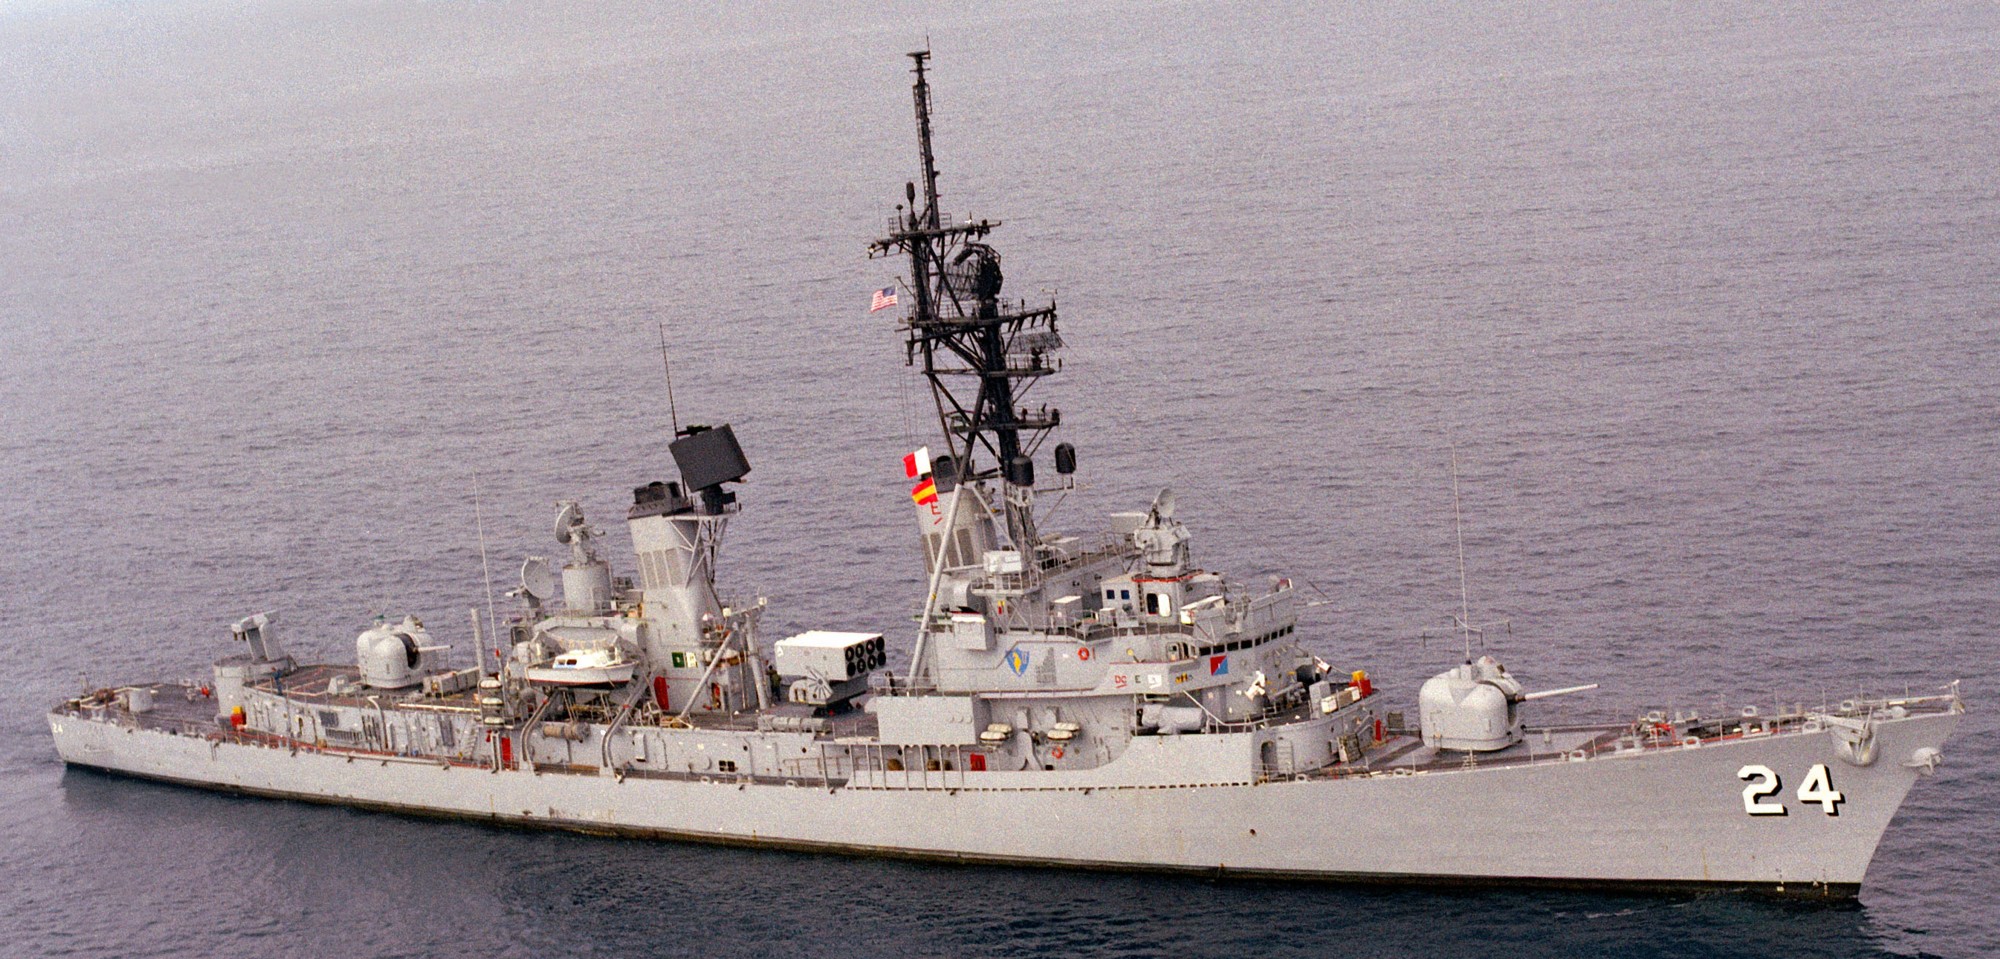 d 219 hs nearchos ex ddg 24 uss waddell destroyer hellenic navy